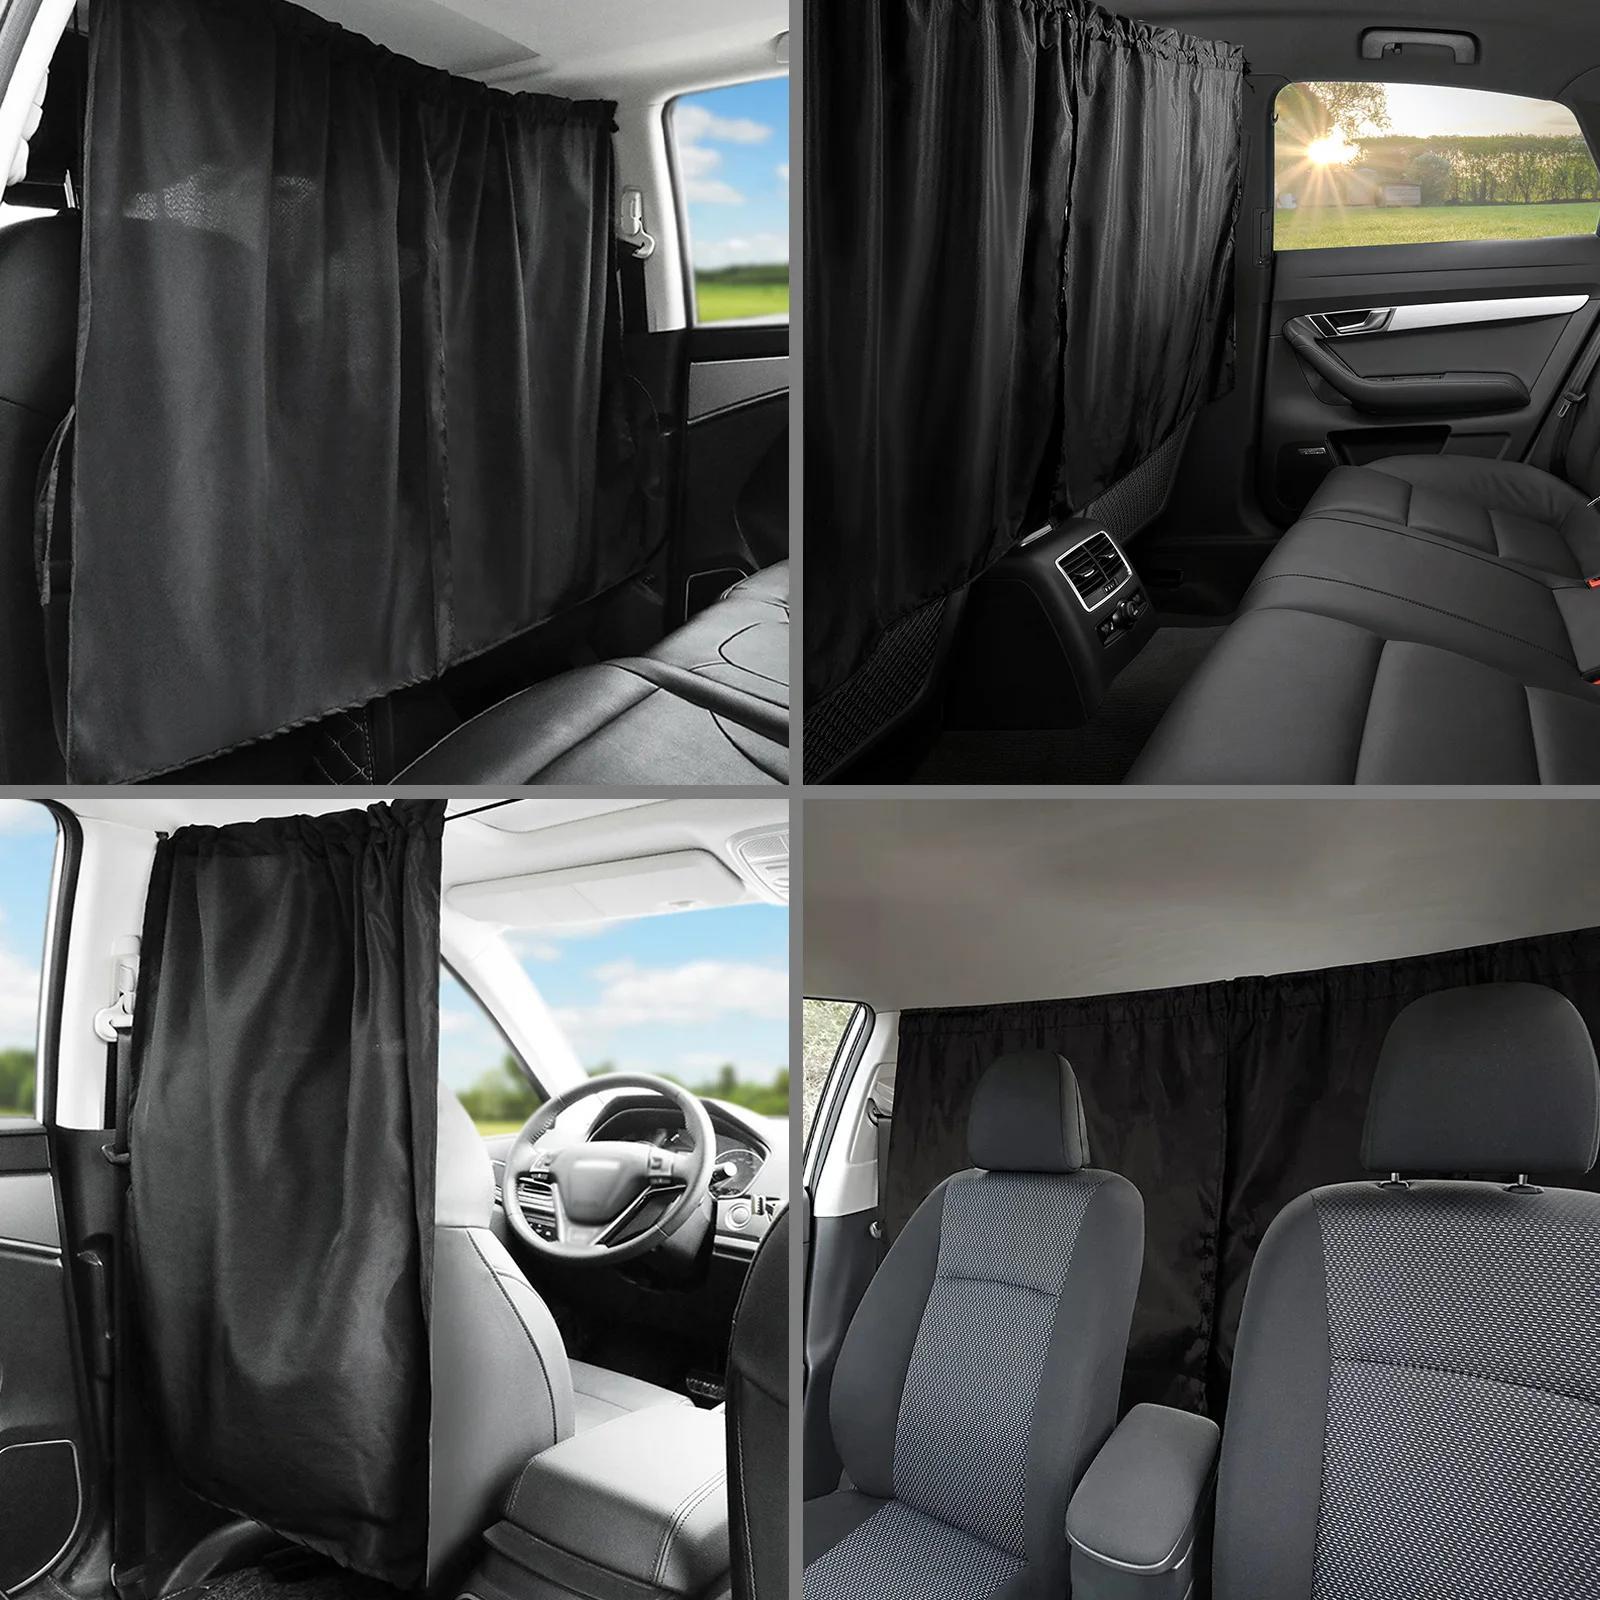 Rideaux de séparation de voiture - 190 x 120 cm - Grands rideaux de  confidentialité noirs pour siège avant et arrière - Protection universelle  pour